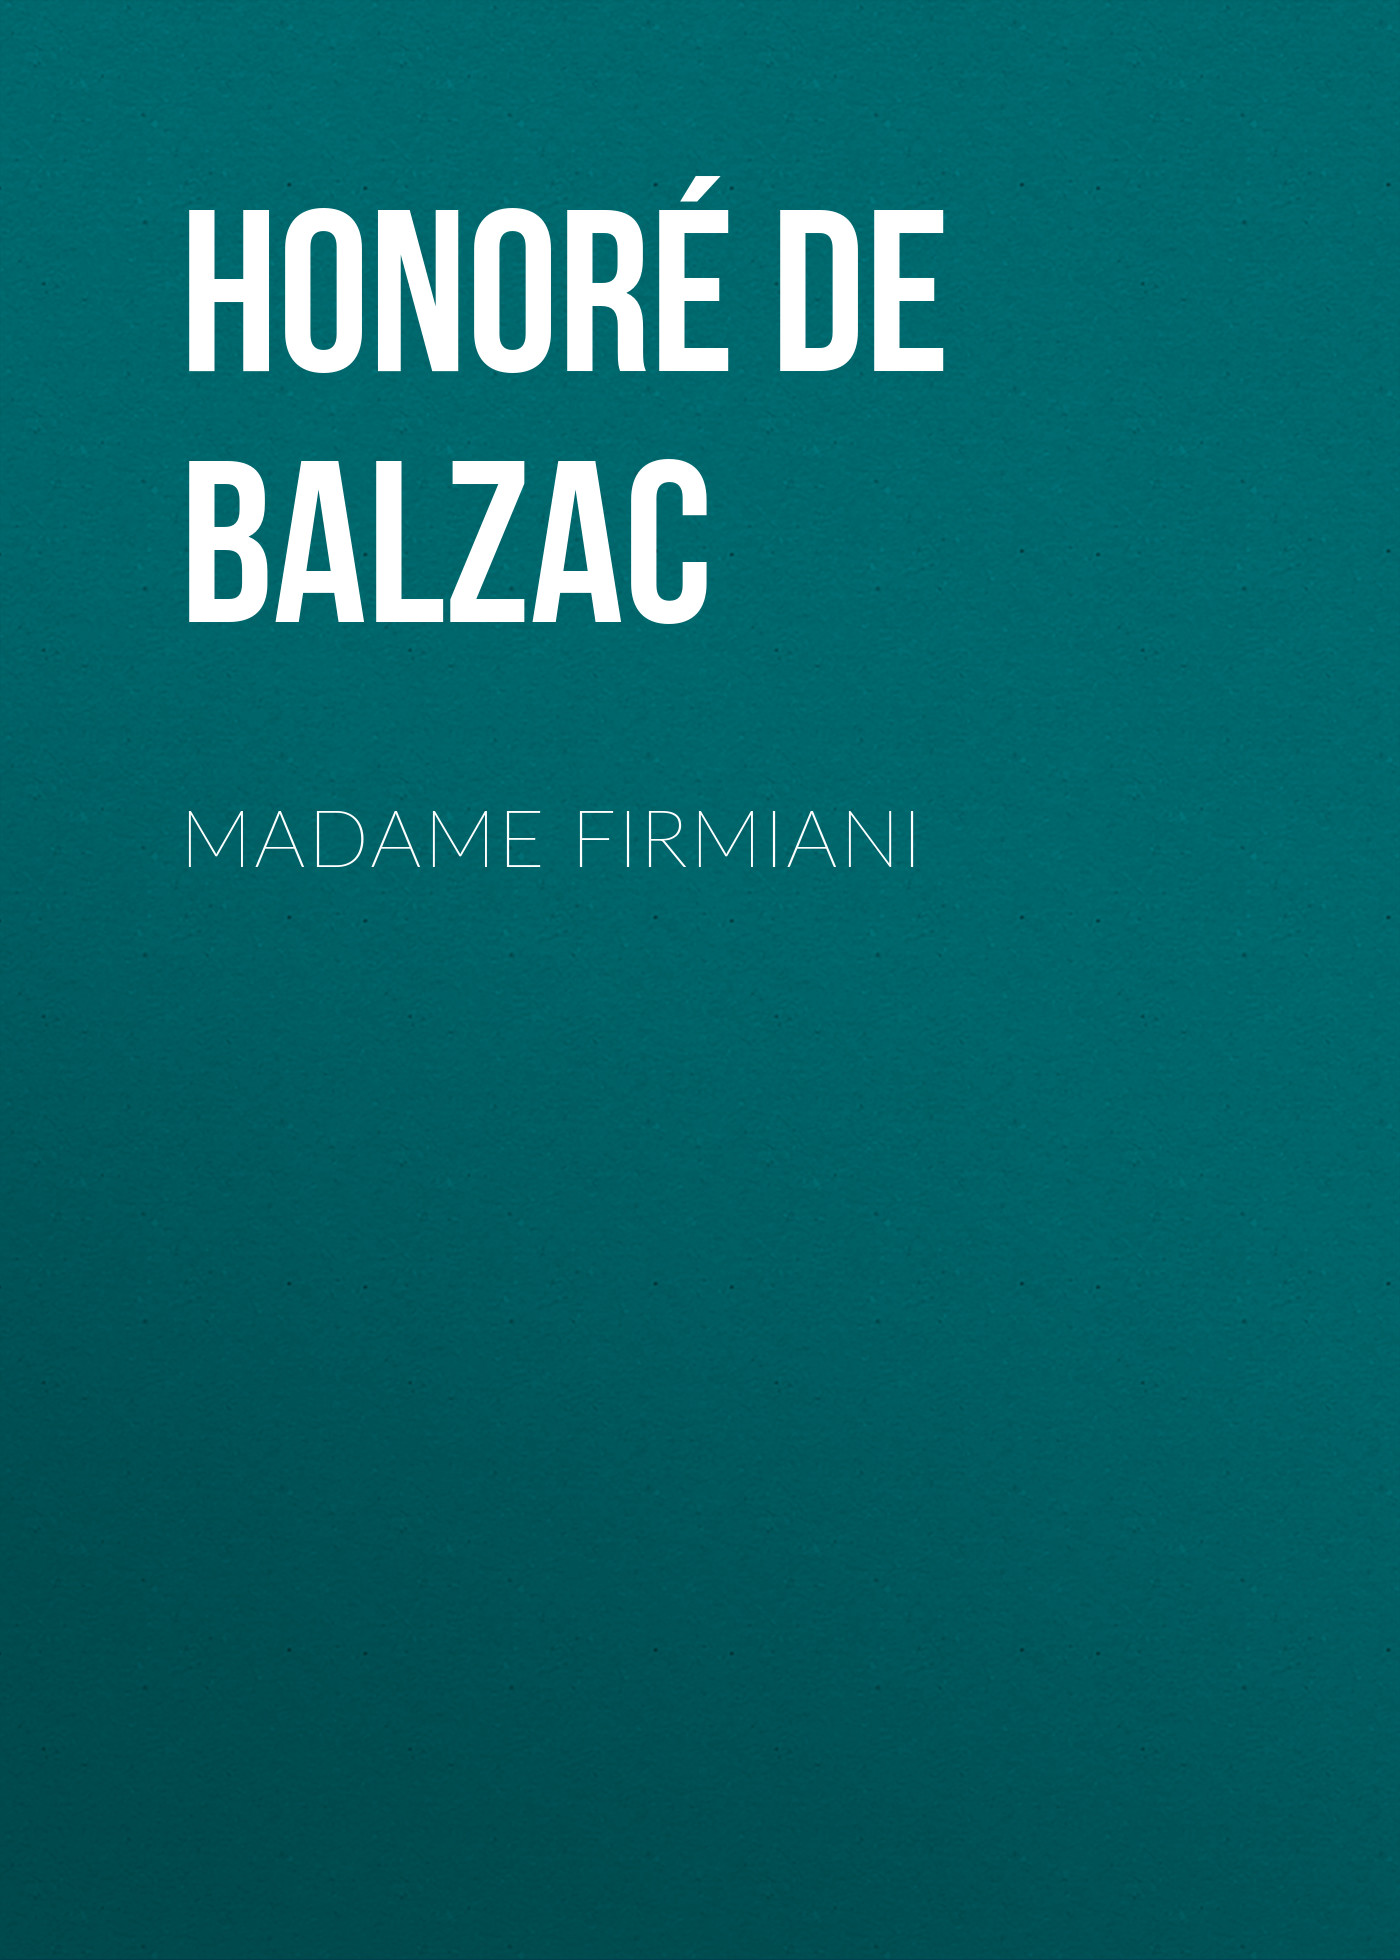 Книга Madame Firmiani из серии , созданная Honoré Balzac, может относится к жанру Литература 19 века, Зарубежная старинная литература, Зарубежная классика. Стоимость электронной книги Madame Firmiani с идентификатором 25020803 составляет 0 руб.